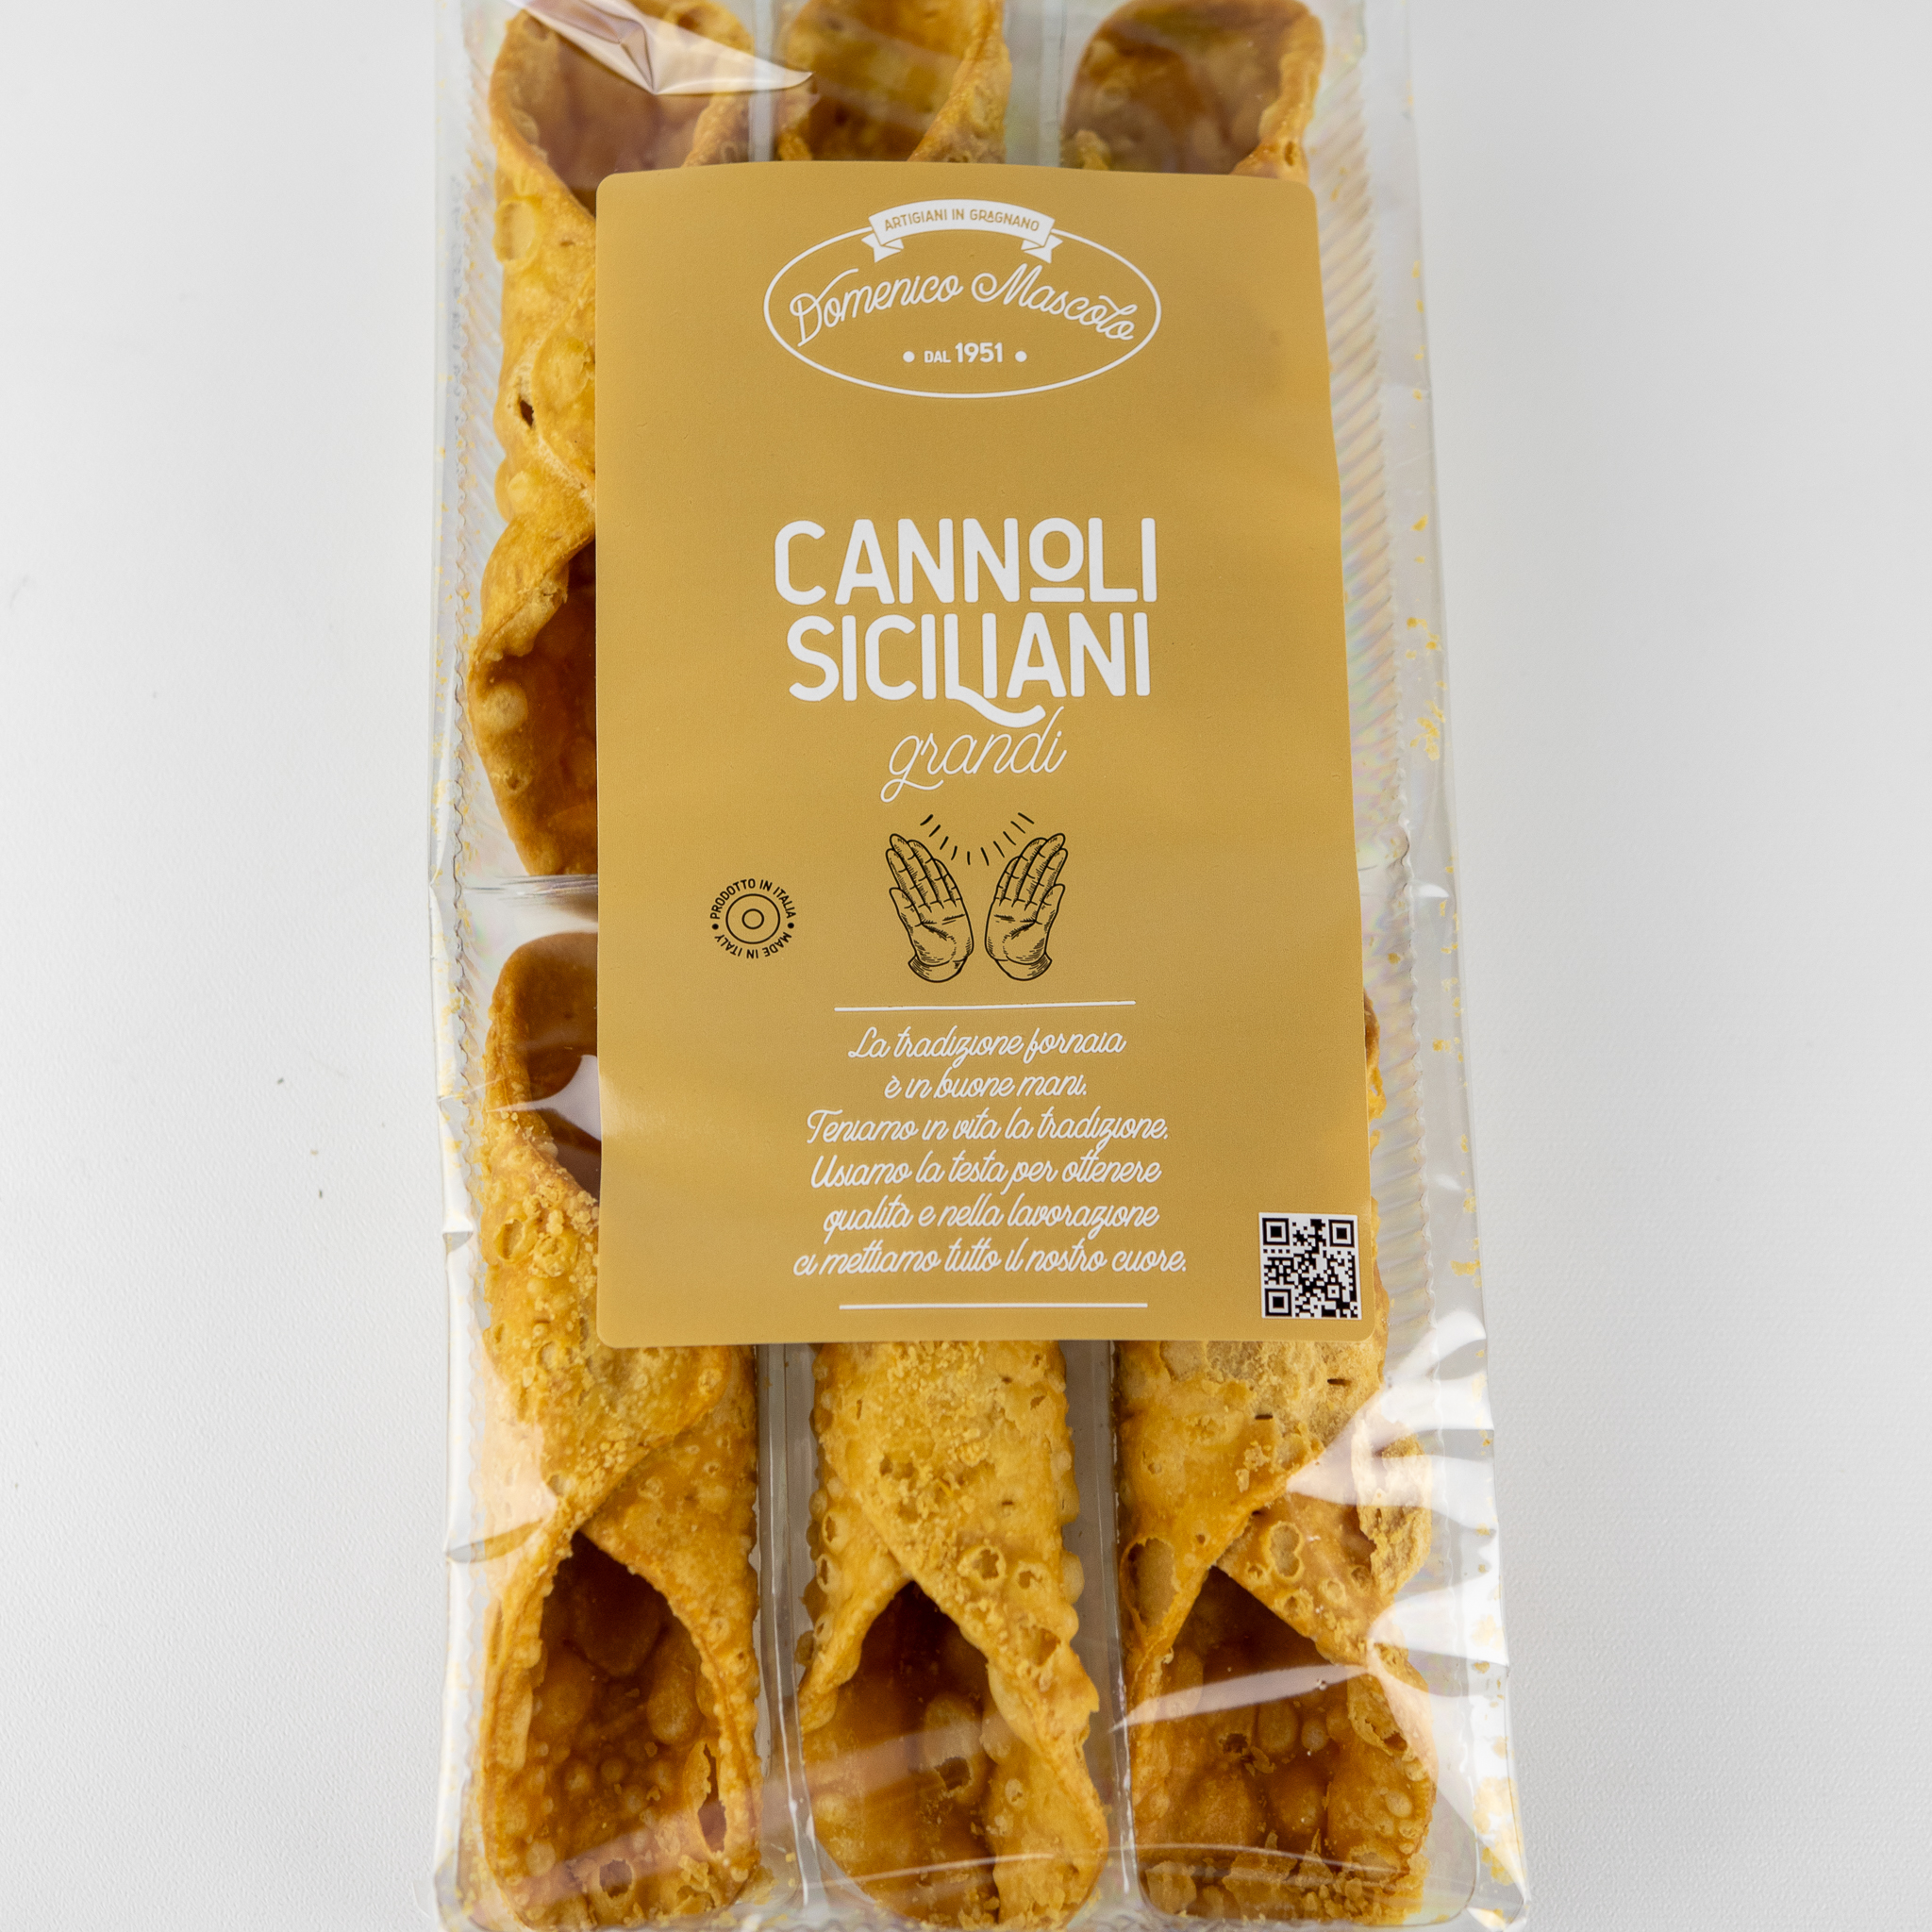 Cannoli grandi siciliani 8 pakker 6/27 gr biscotti mascolo*